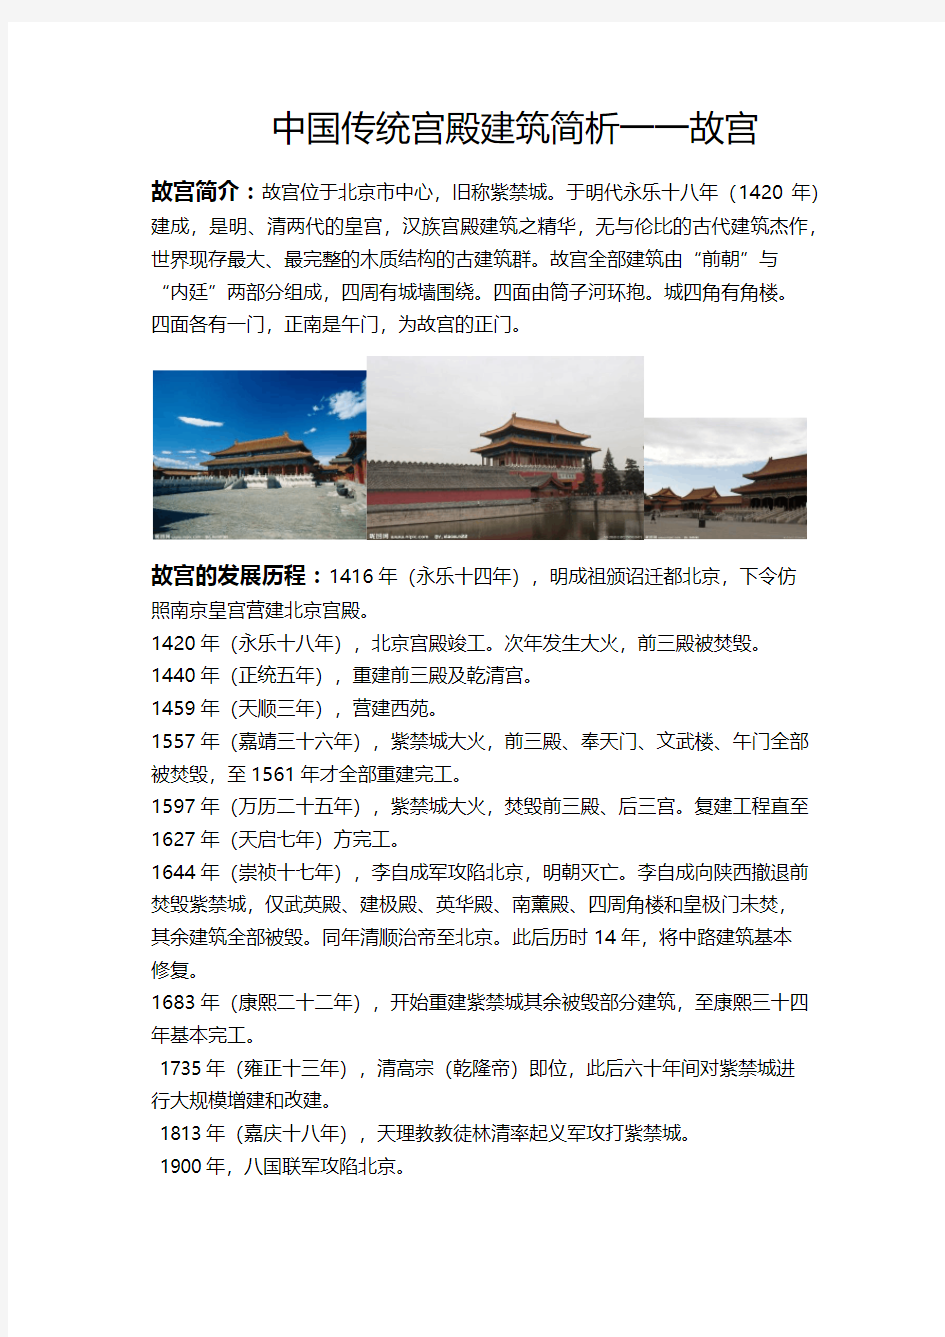 中国传统宫殿建筑简析一一故宫